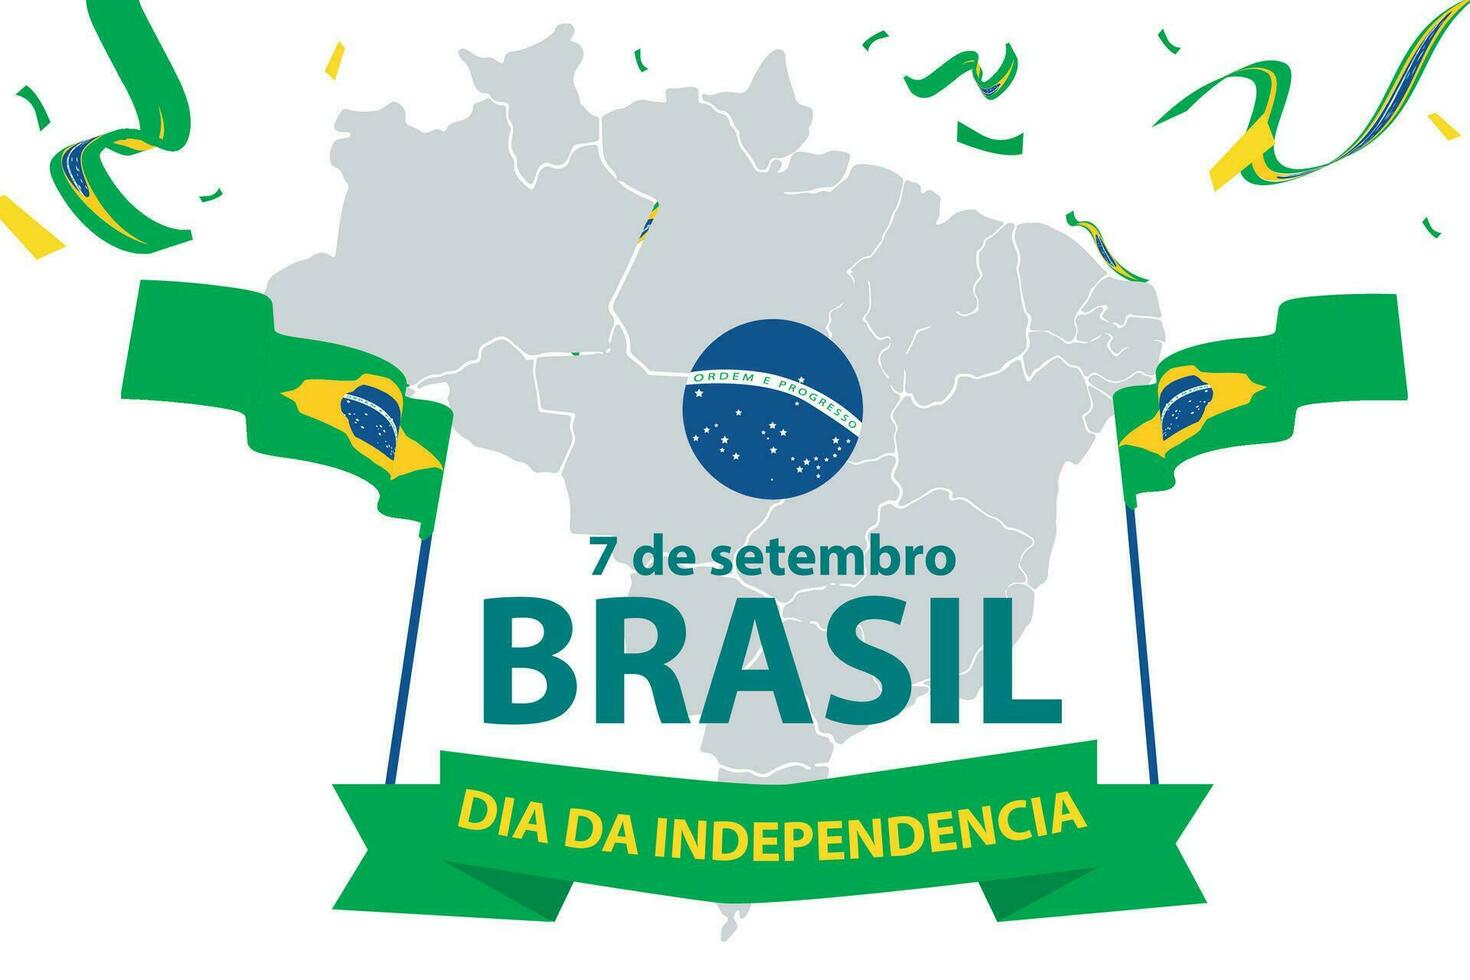 Brazilië onafhankelijkheid dag 7 september viering vector sjabloon banier, sociaal media na, folder of groet kaart met geel groen thema en vlag. vector illustratie